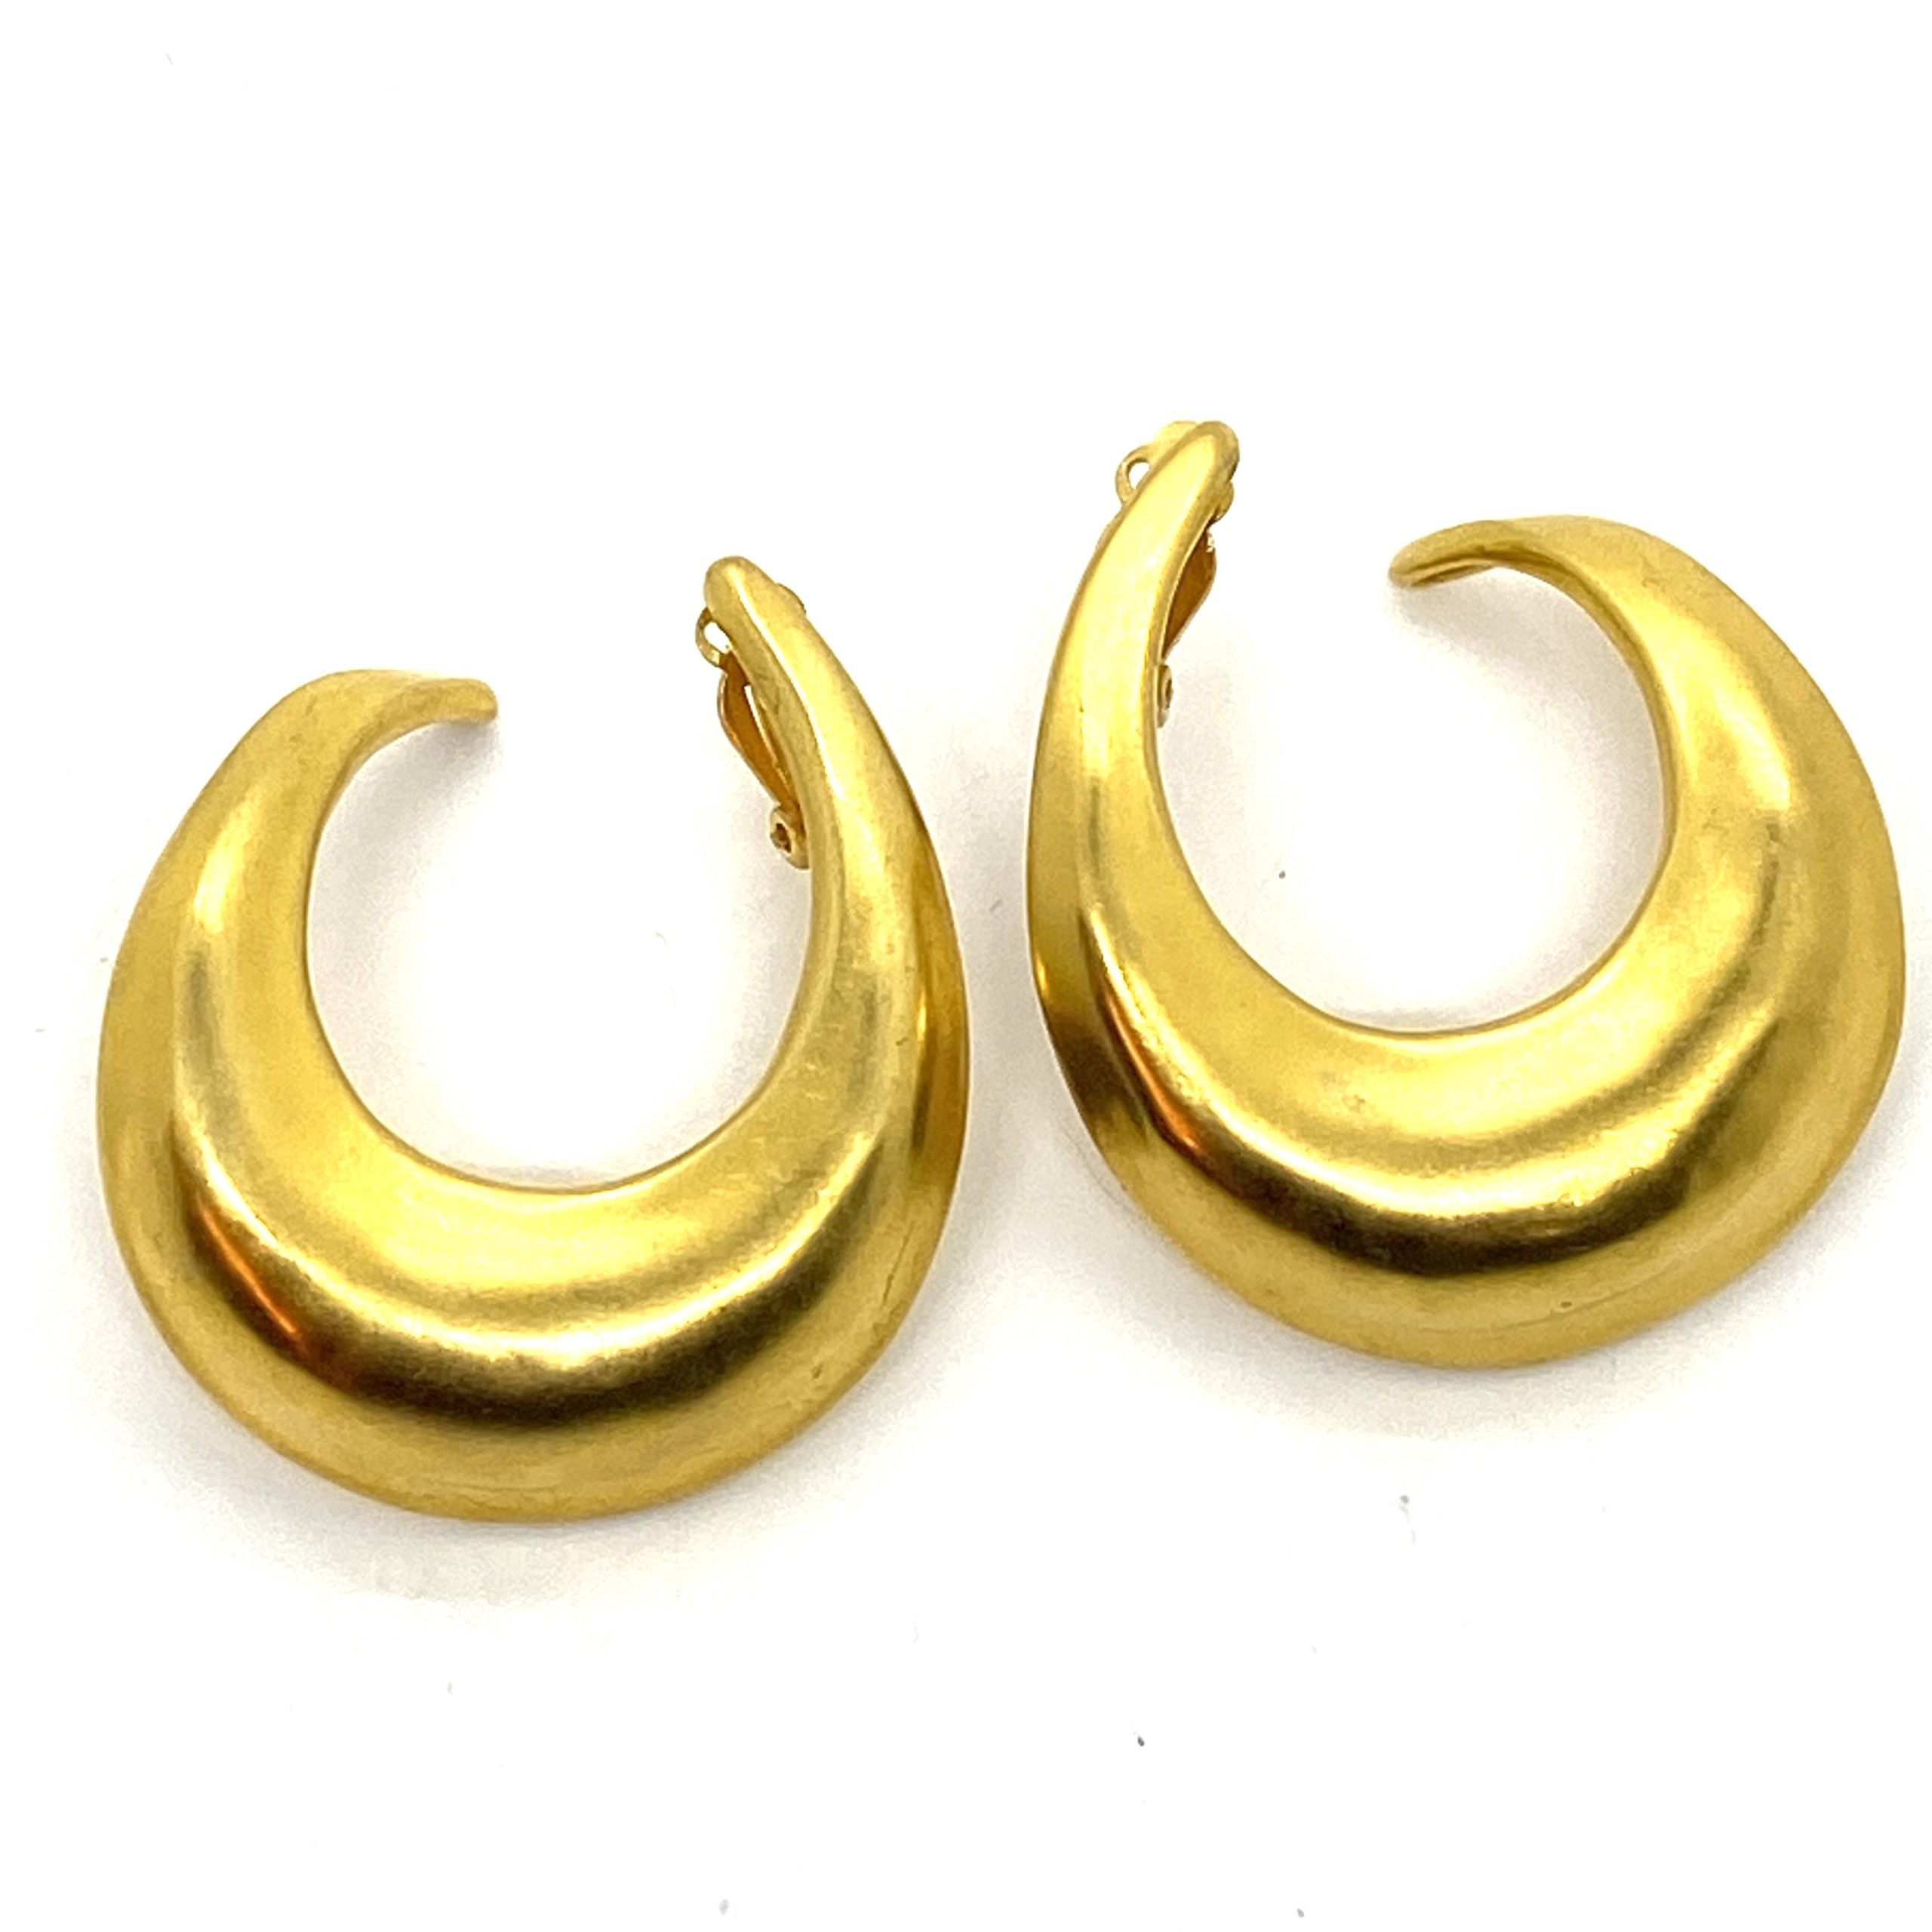 Very Iconic Hoop Earrings - Gold